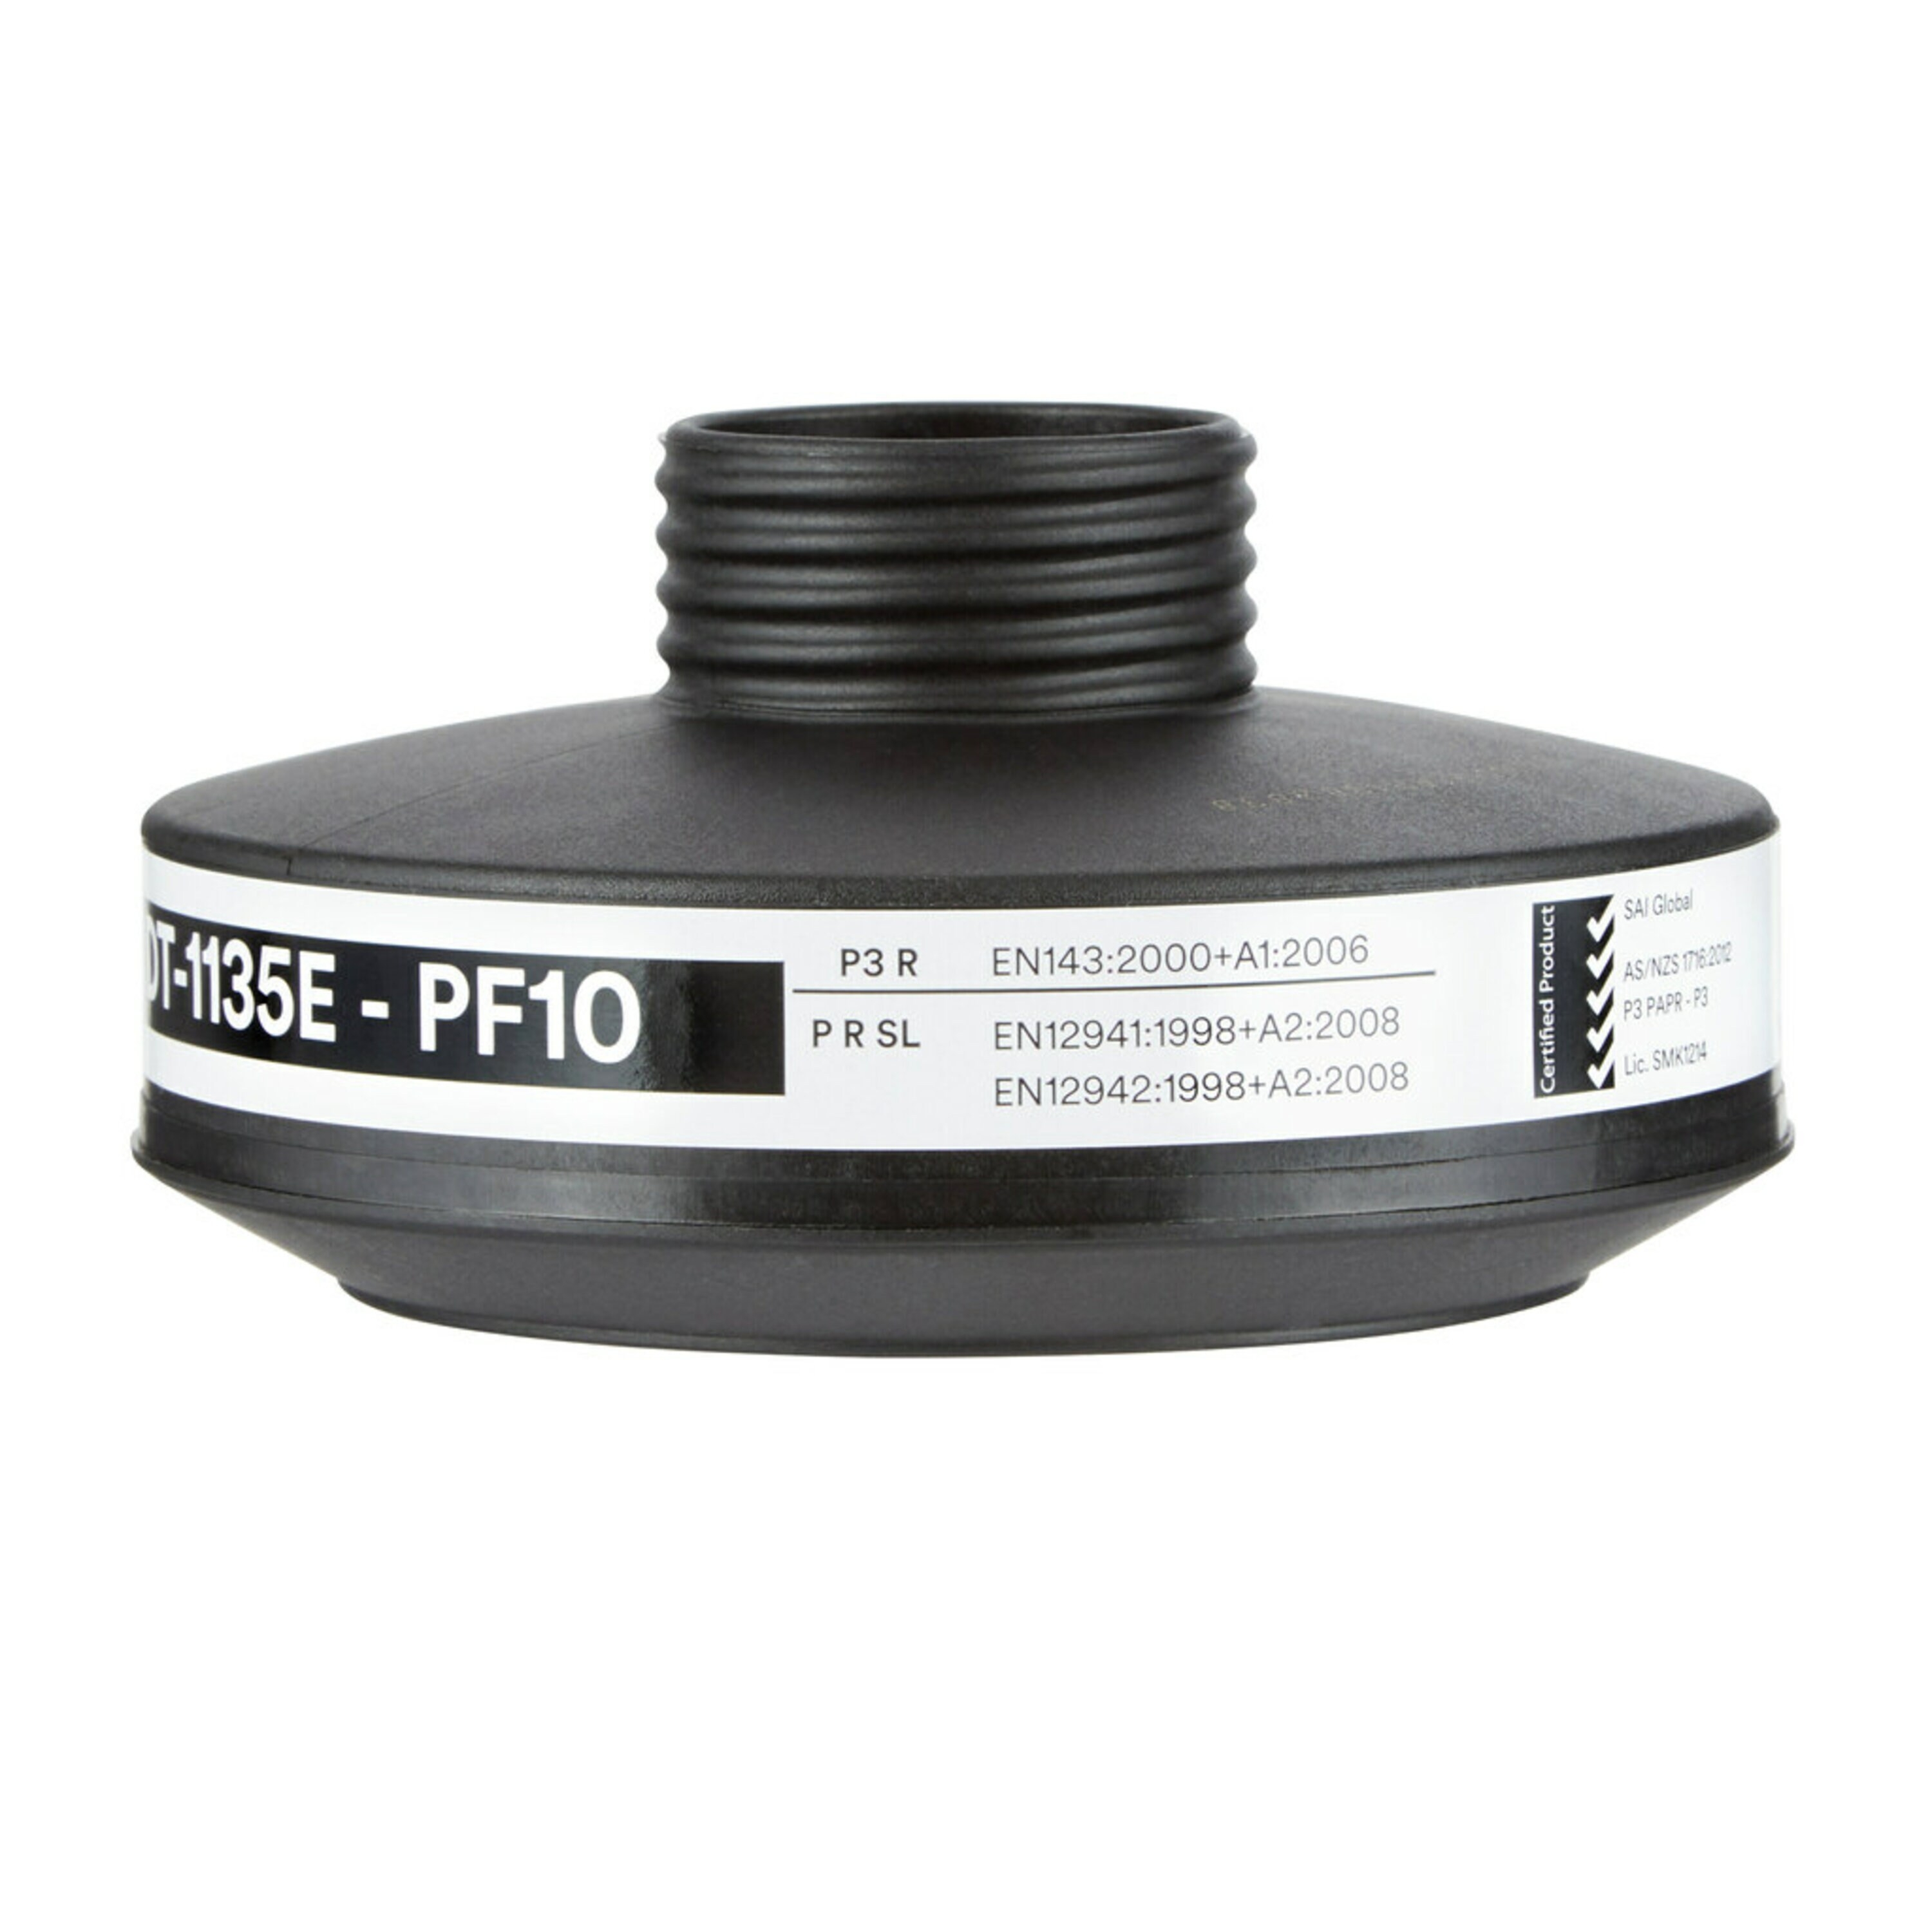 3M Particle filter, PF10 P3 R D, DT-1135E